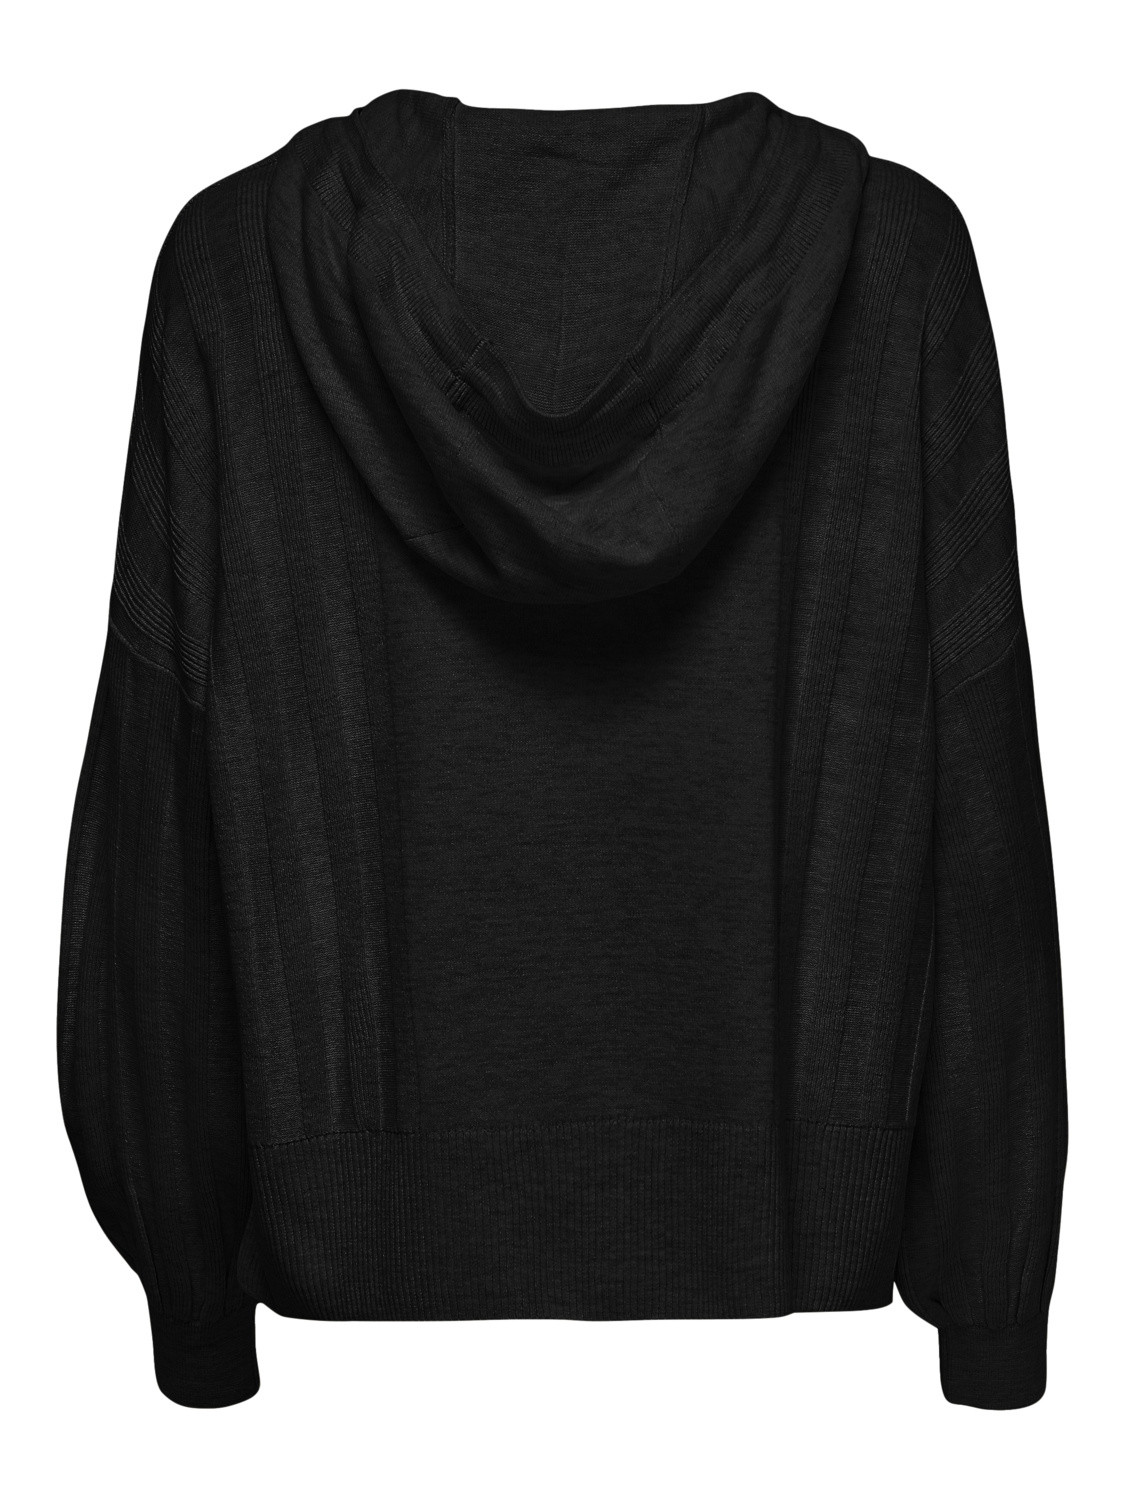 Women's hoodie, Black, large image number 1